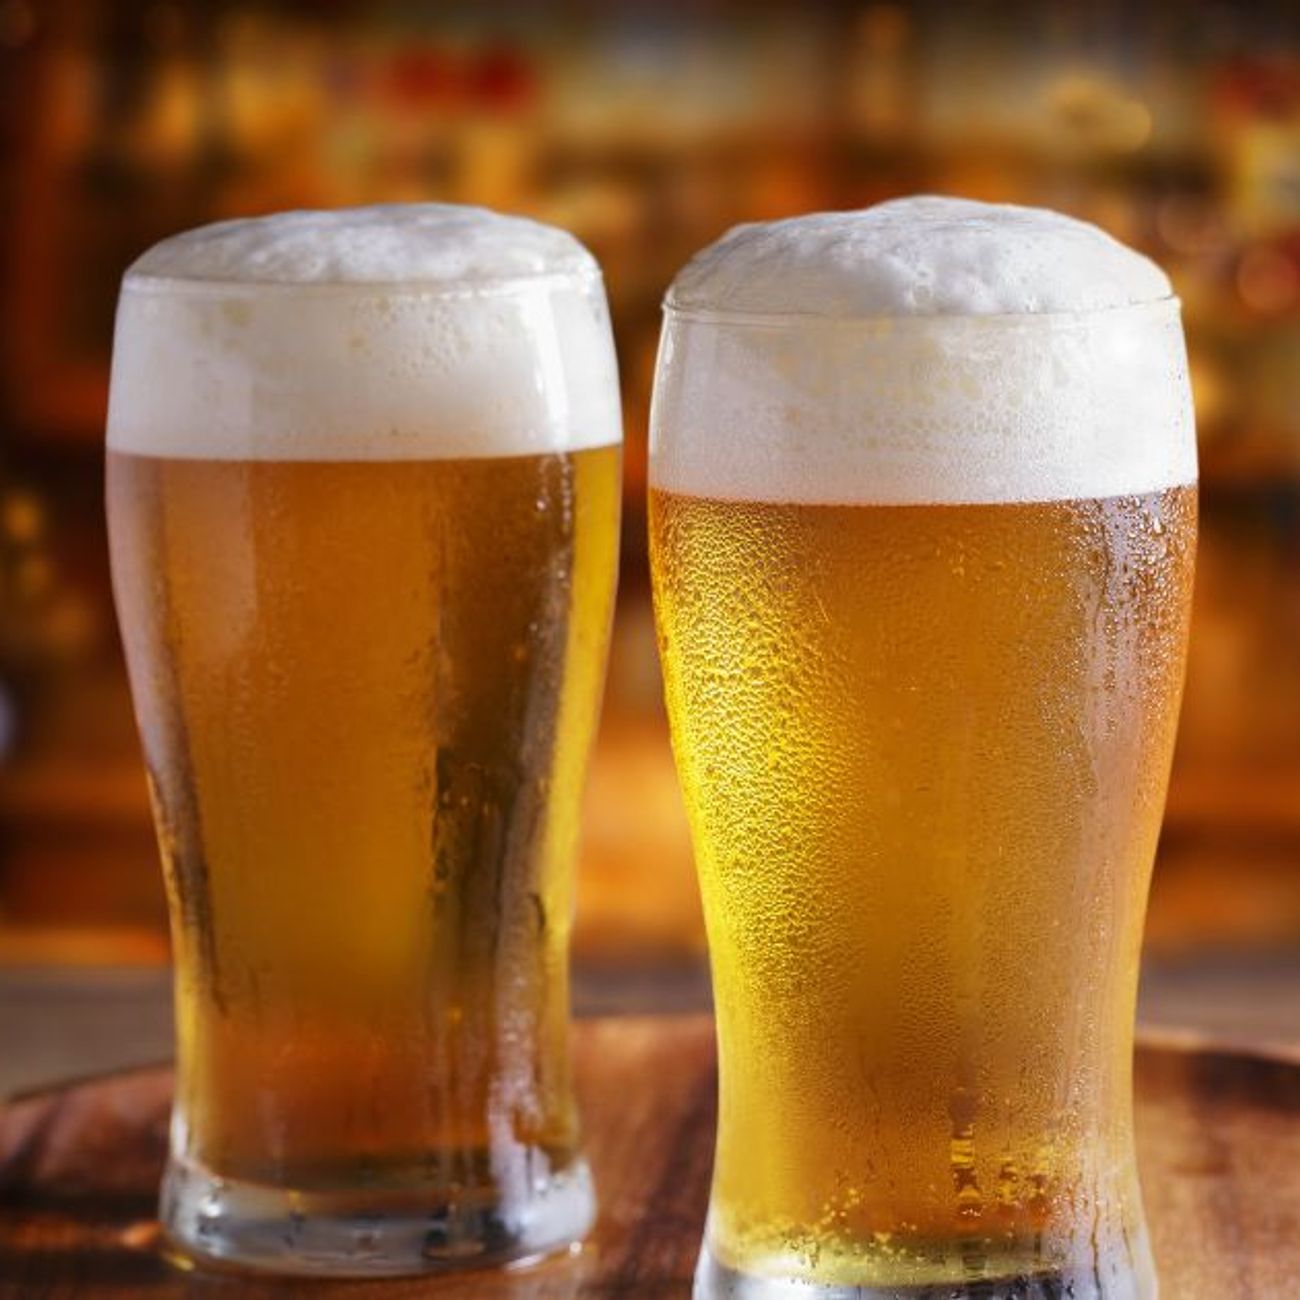 La bière est bénéfique à la santé intestinale des hommes